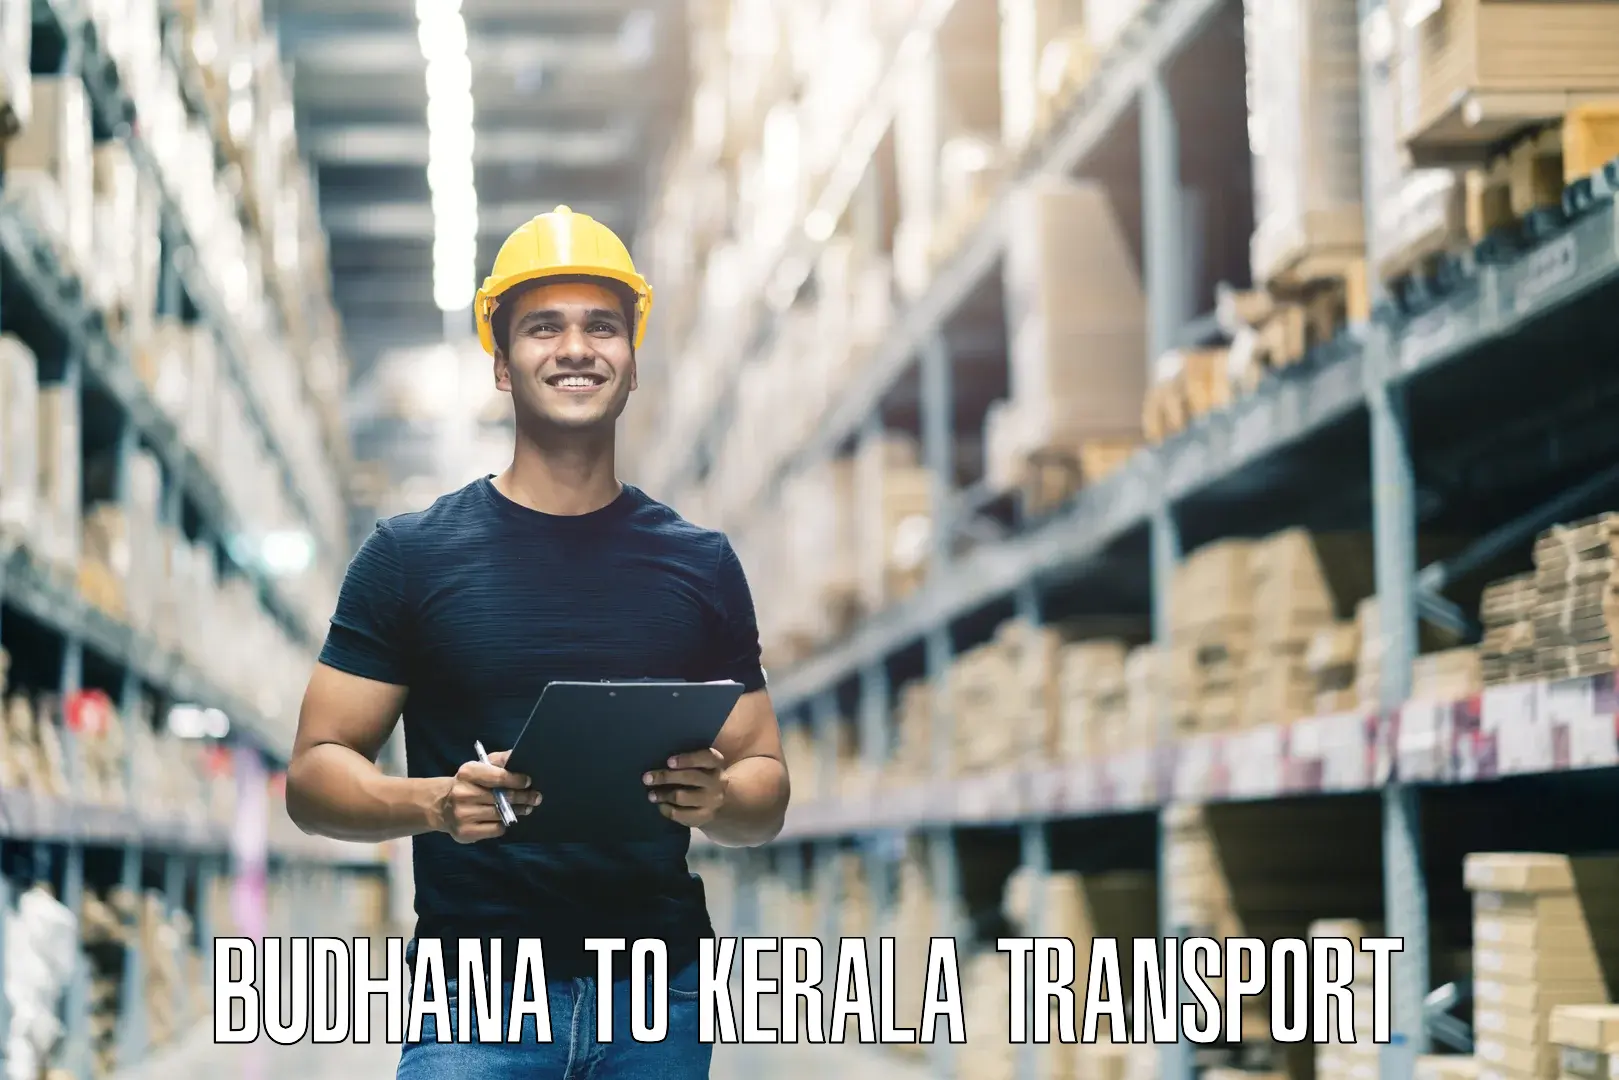 All India transport service Budhana to Narikkuni